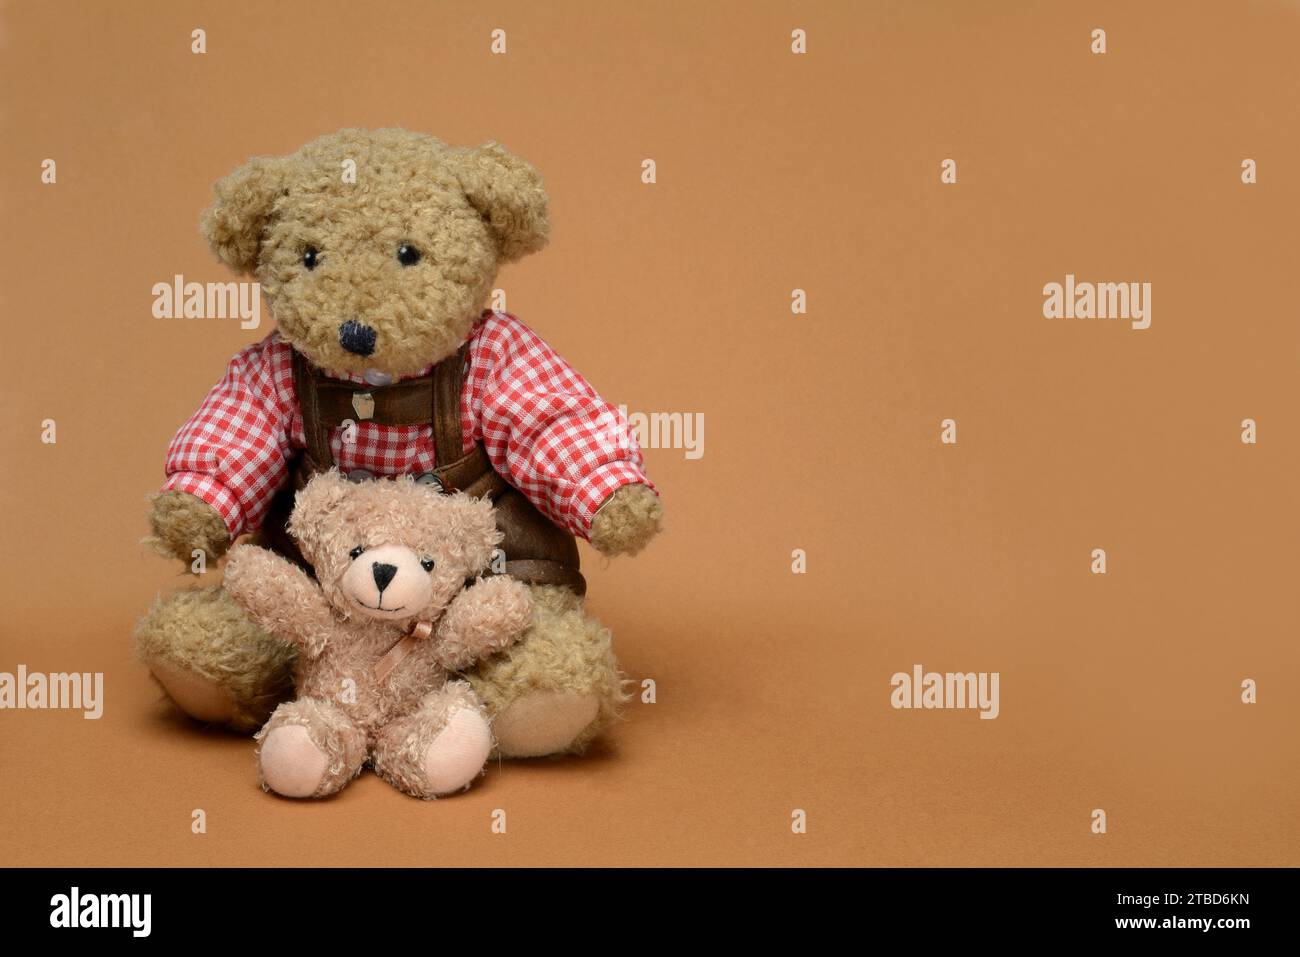 Deux ours en peluche, assis, devant un fond brun, nounours Banque D'Images